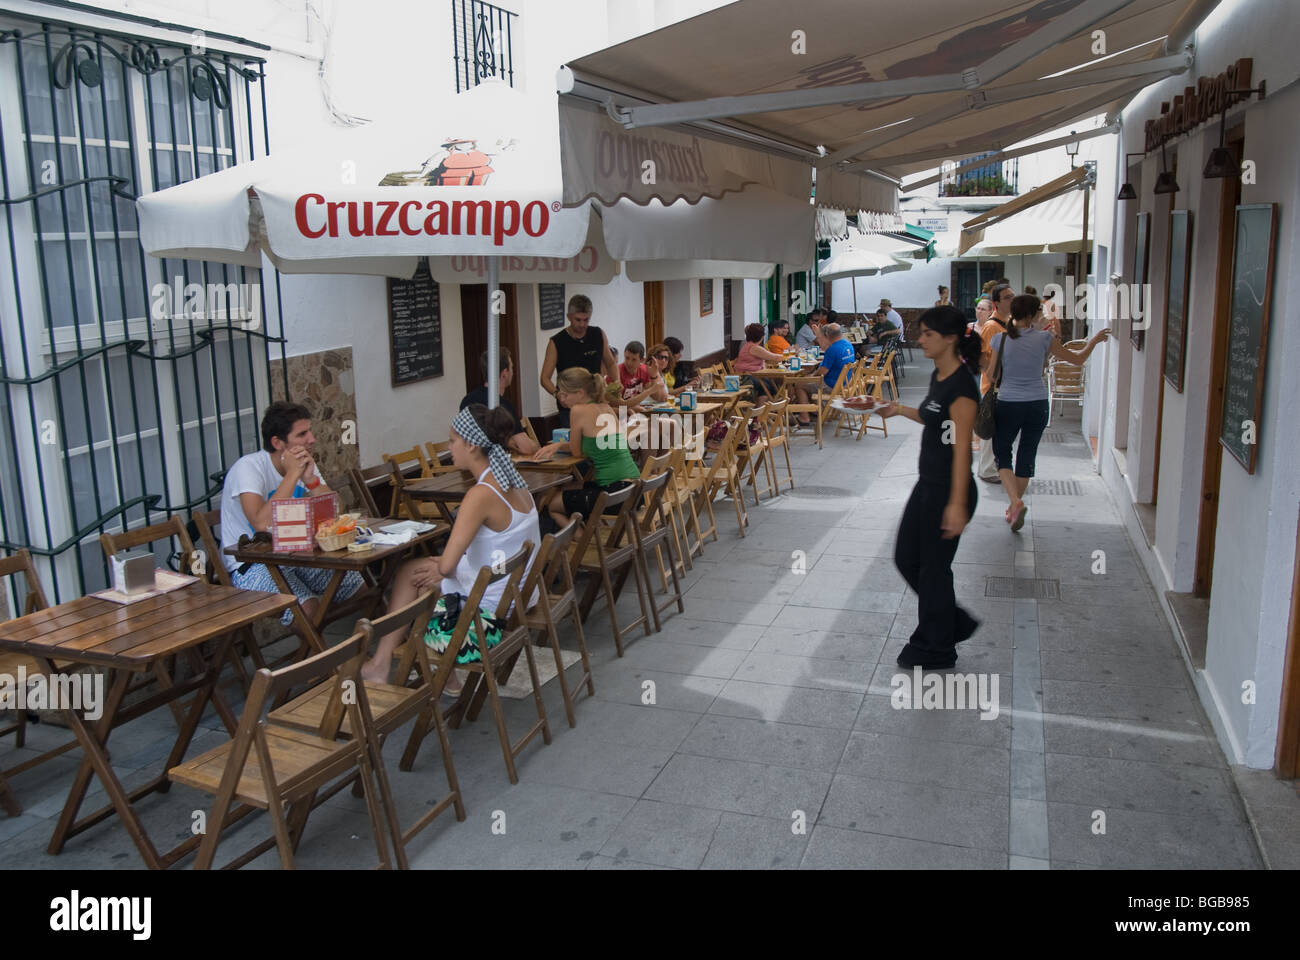 Tourists in a restaurant, Conil de la Frontera, Spain Stock Photo